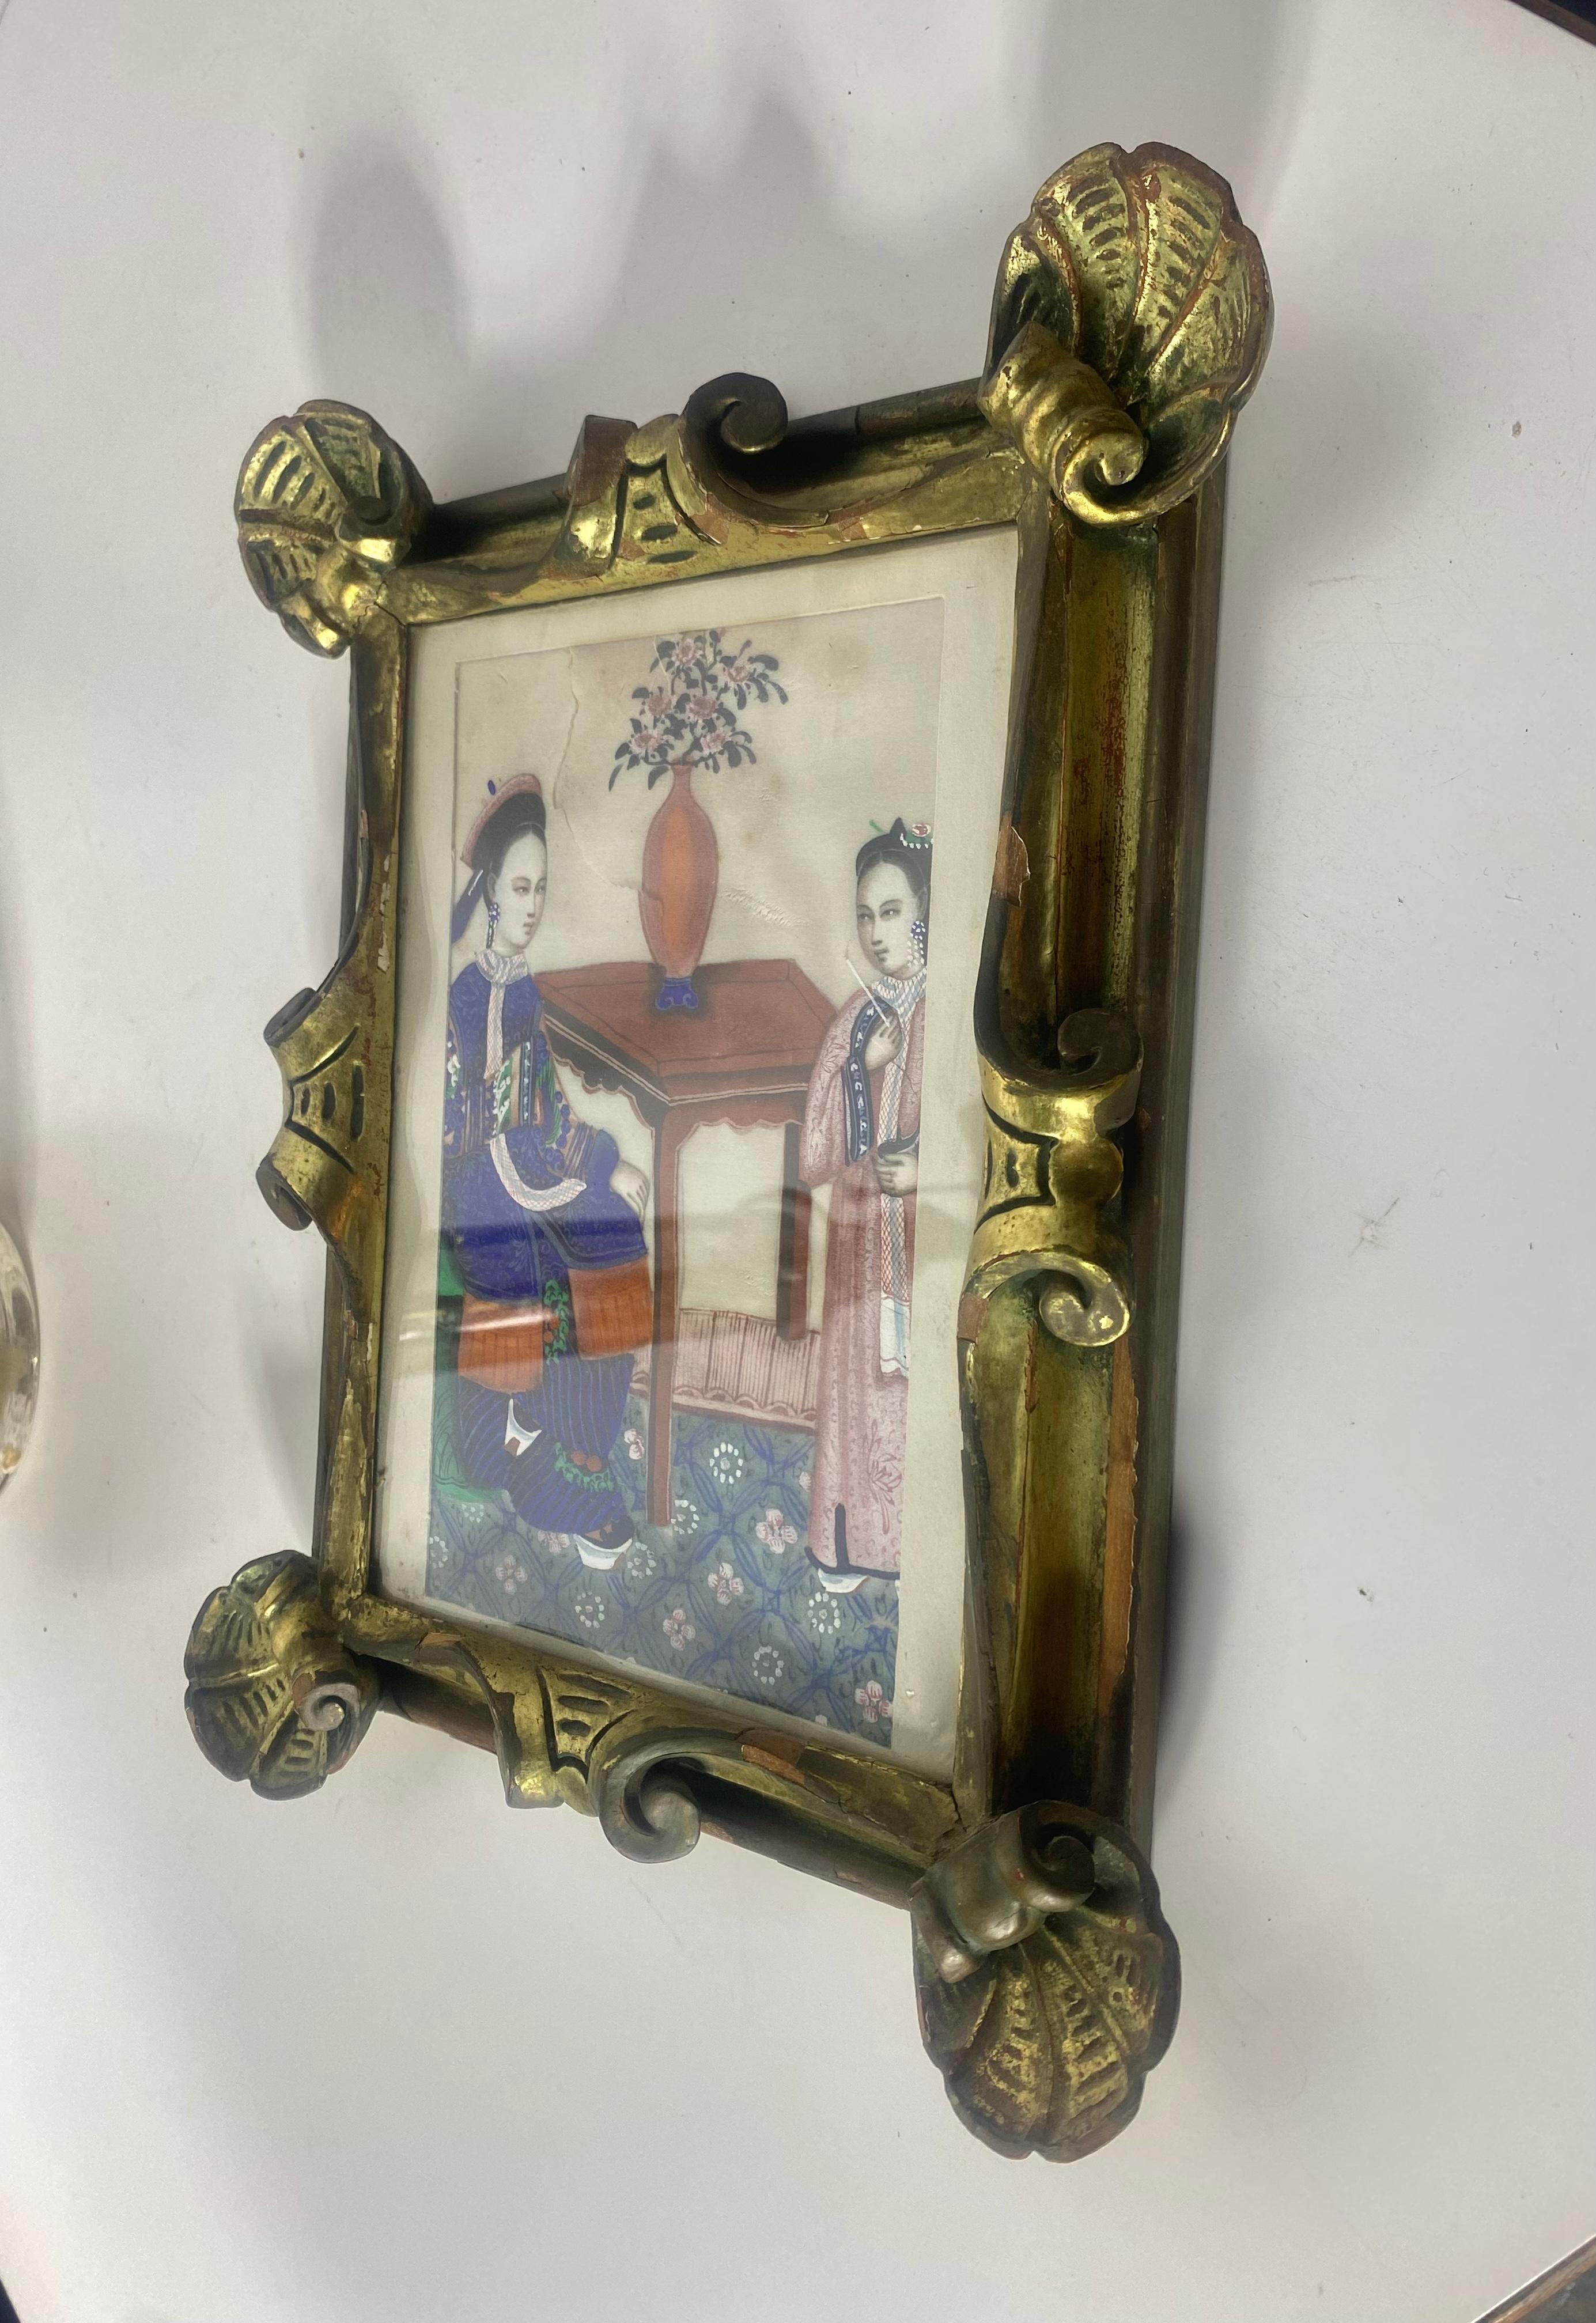 Peinture traditionnelle chinoise sur soie, représentant deux femmes. Motif inhabituel de coquille surdimensionnée sur le cadre sculpté et doré.